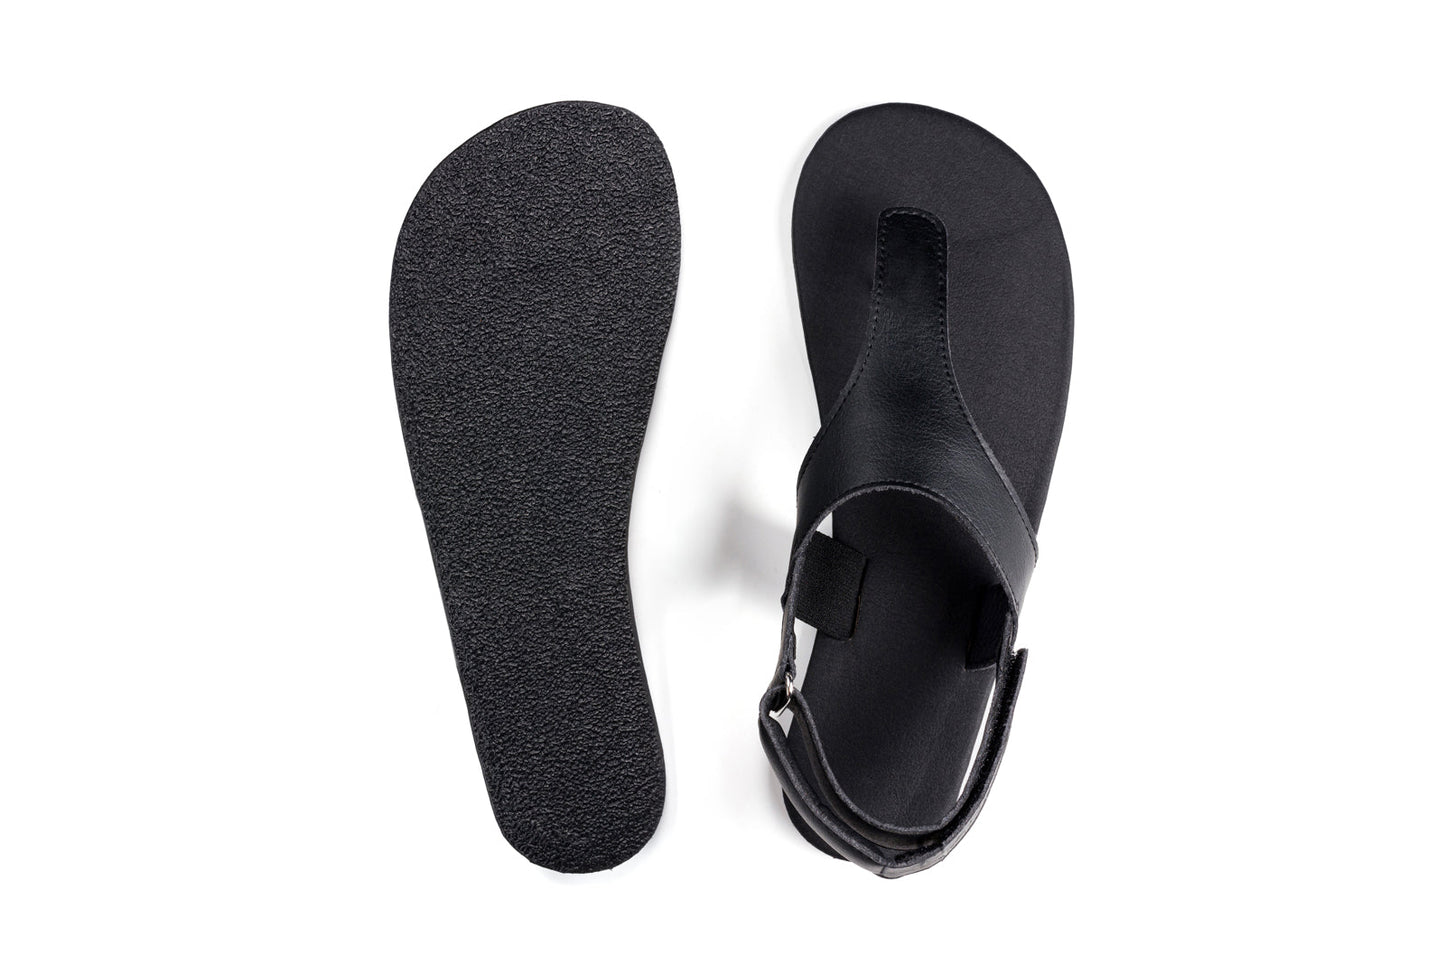 Ahinsa Simple barfods sandaler til kvinder i farven black, saal